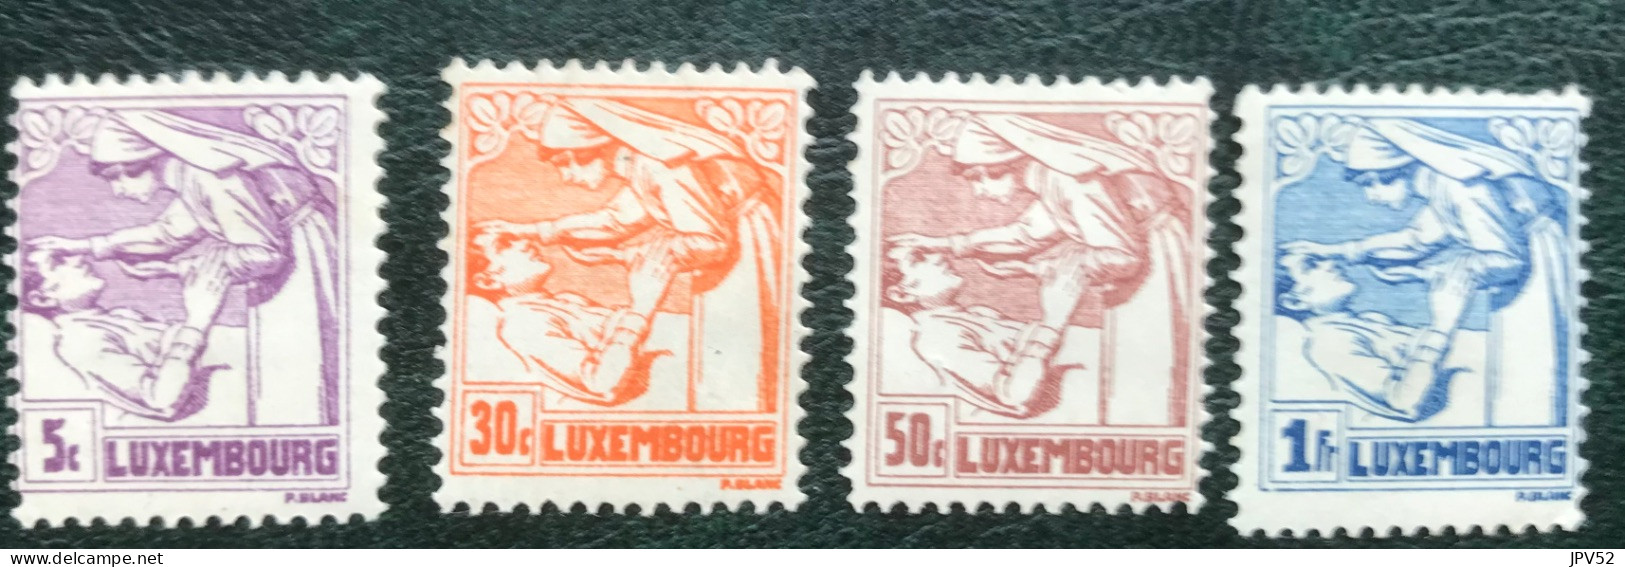 Luxembourg - Luxemburg - C17/1 - MH - 1925 - Michel 157#160 - TBC & Kankerbestrijding - Oblitérés